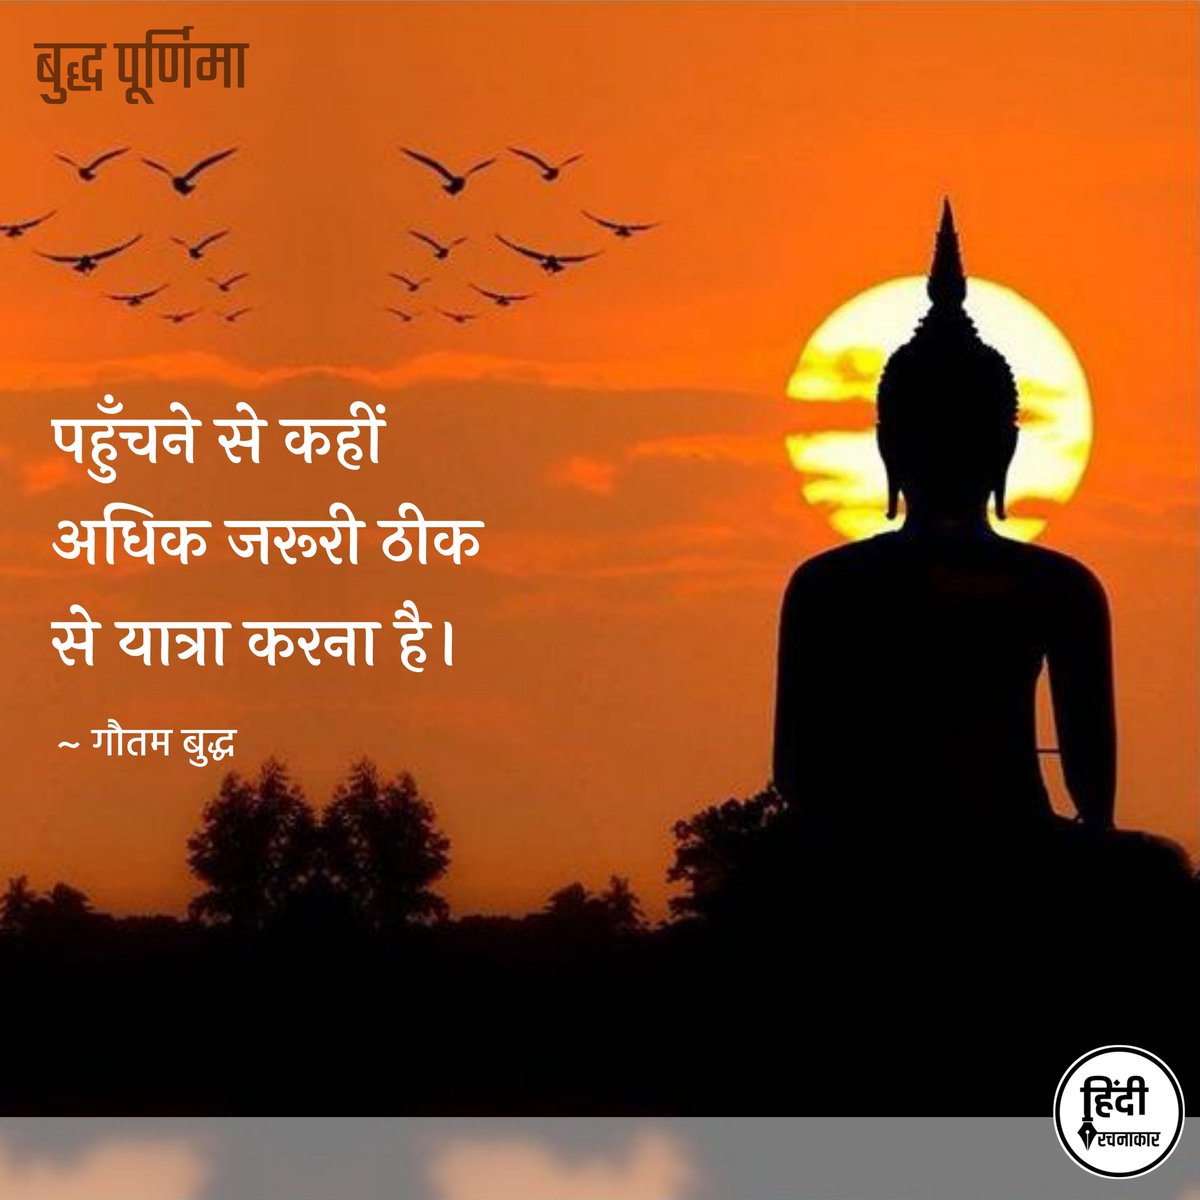 पहुँचने से कहीं अधिक जरूरी ठीक से यात्रा करना है।

~ गौतम बुद्ध

#बुद्धपूर्णिमा

#budhhpurnima
#buddhaquotes 
#gautambuddha 
#Hindirachnakaar